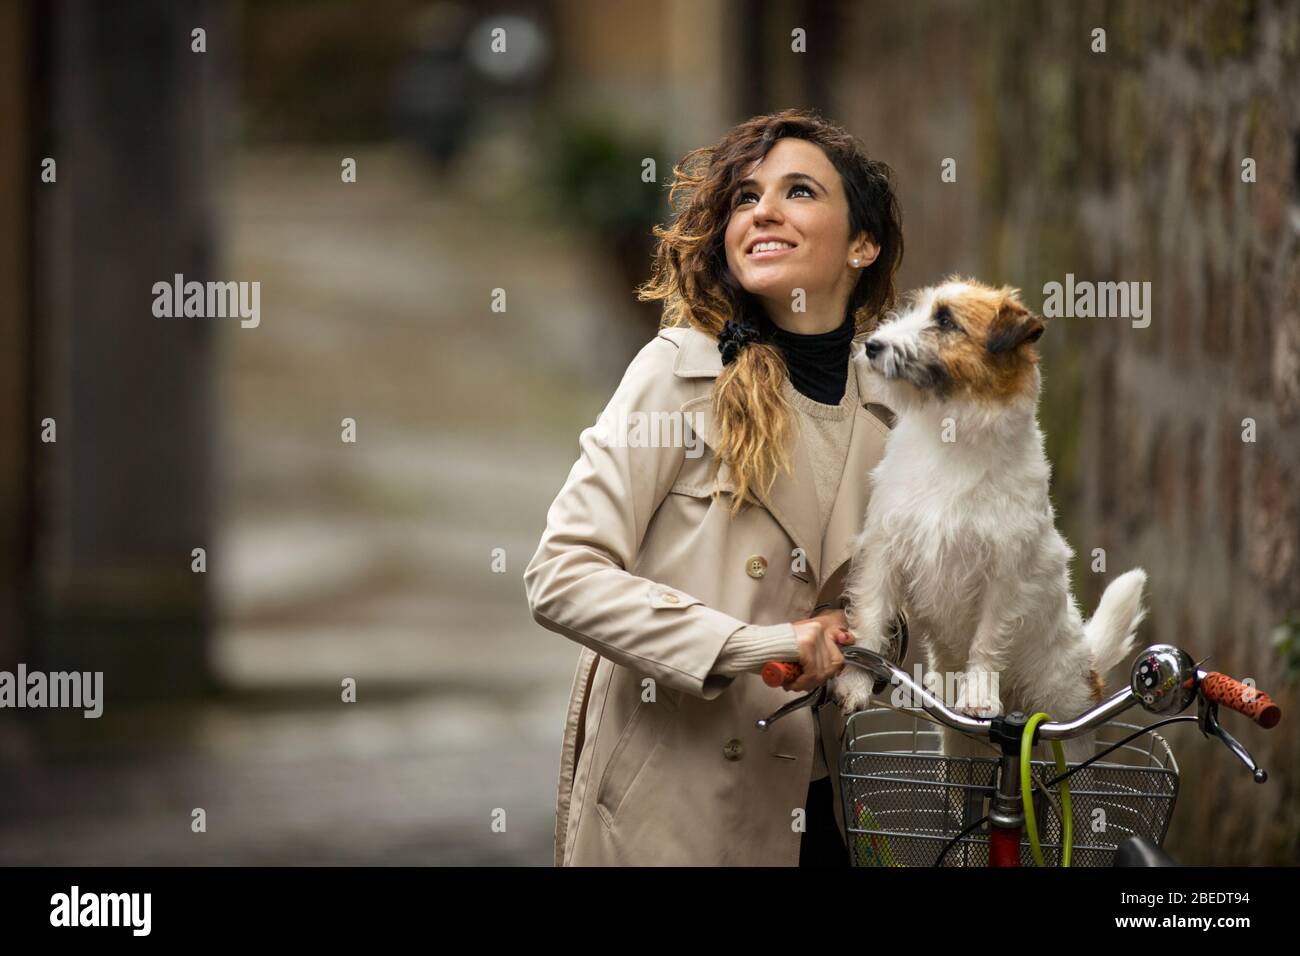 Glückliche junge Frau, die neben ihrem Fahrrad steht und einen Hund im Korb hat Stockfoto